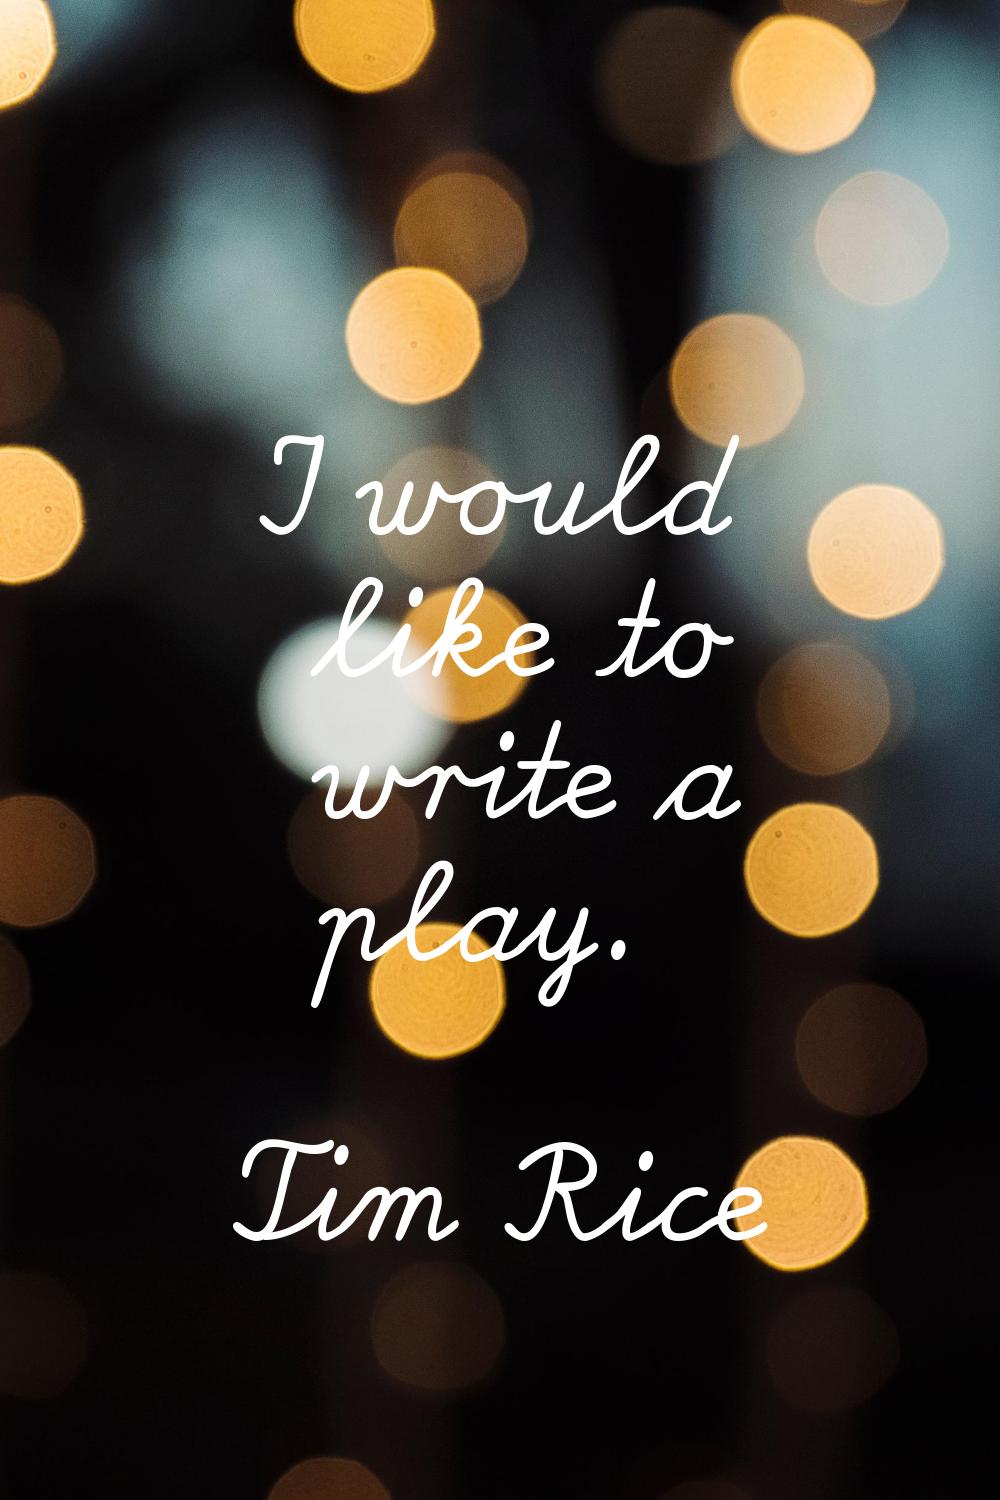 I would like to write a play.